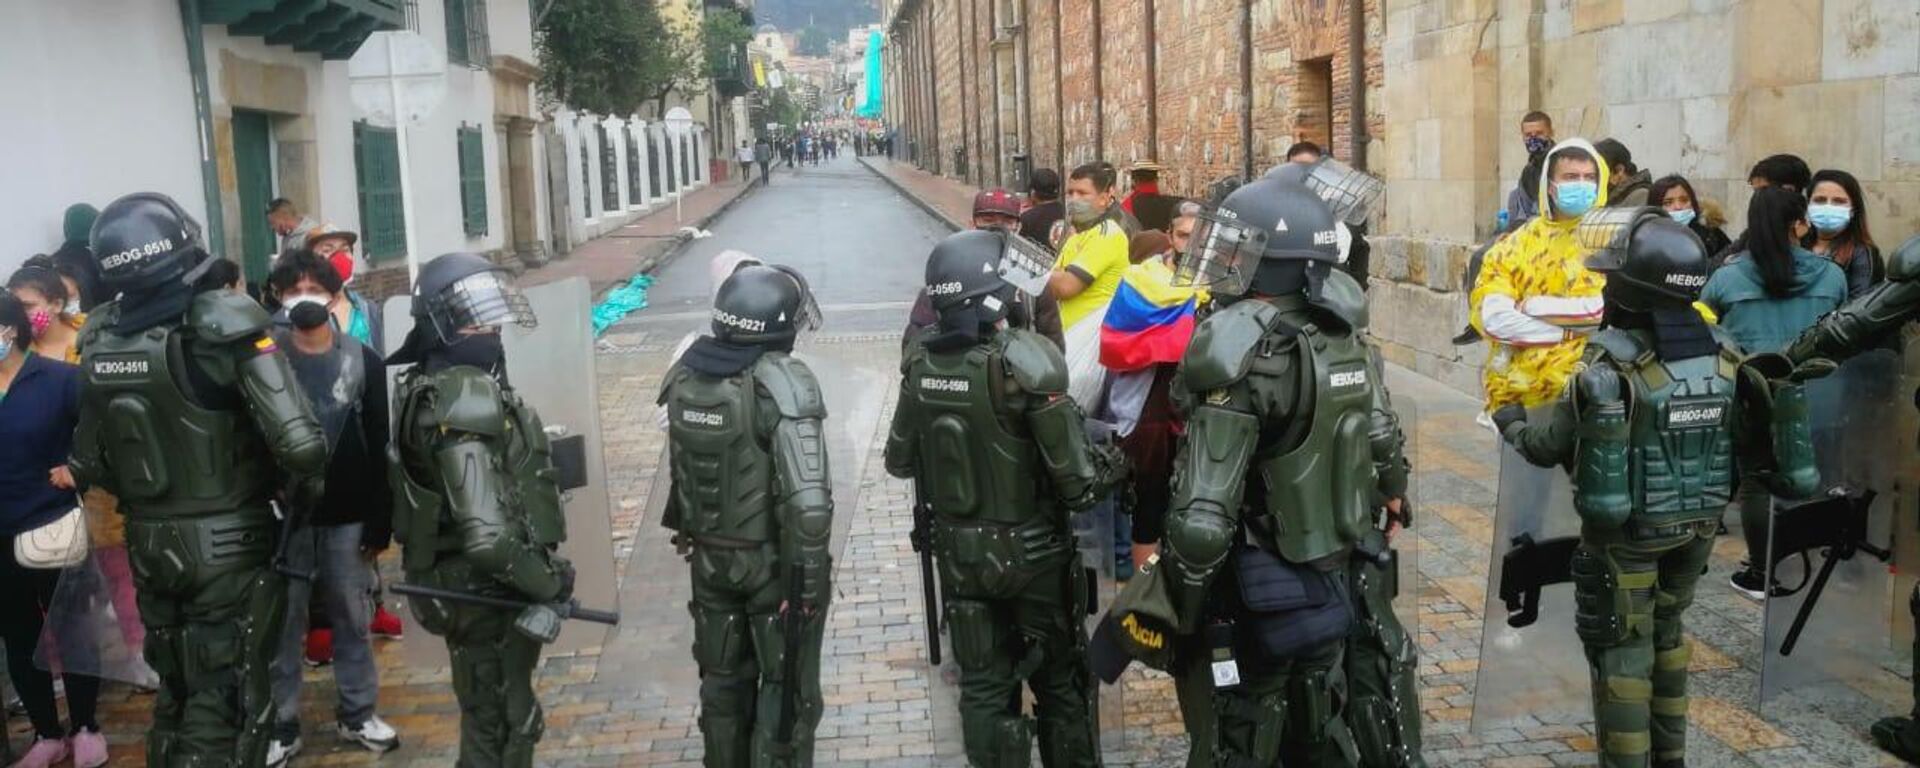 La Policía colombiana durante una jornada de protestas (archivo) - Sputnik Mundo, 1920, 26.11.2021